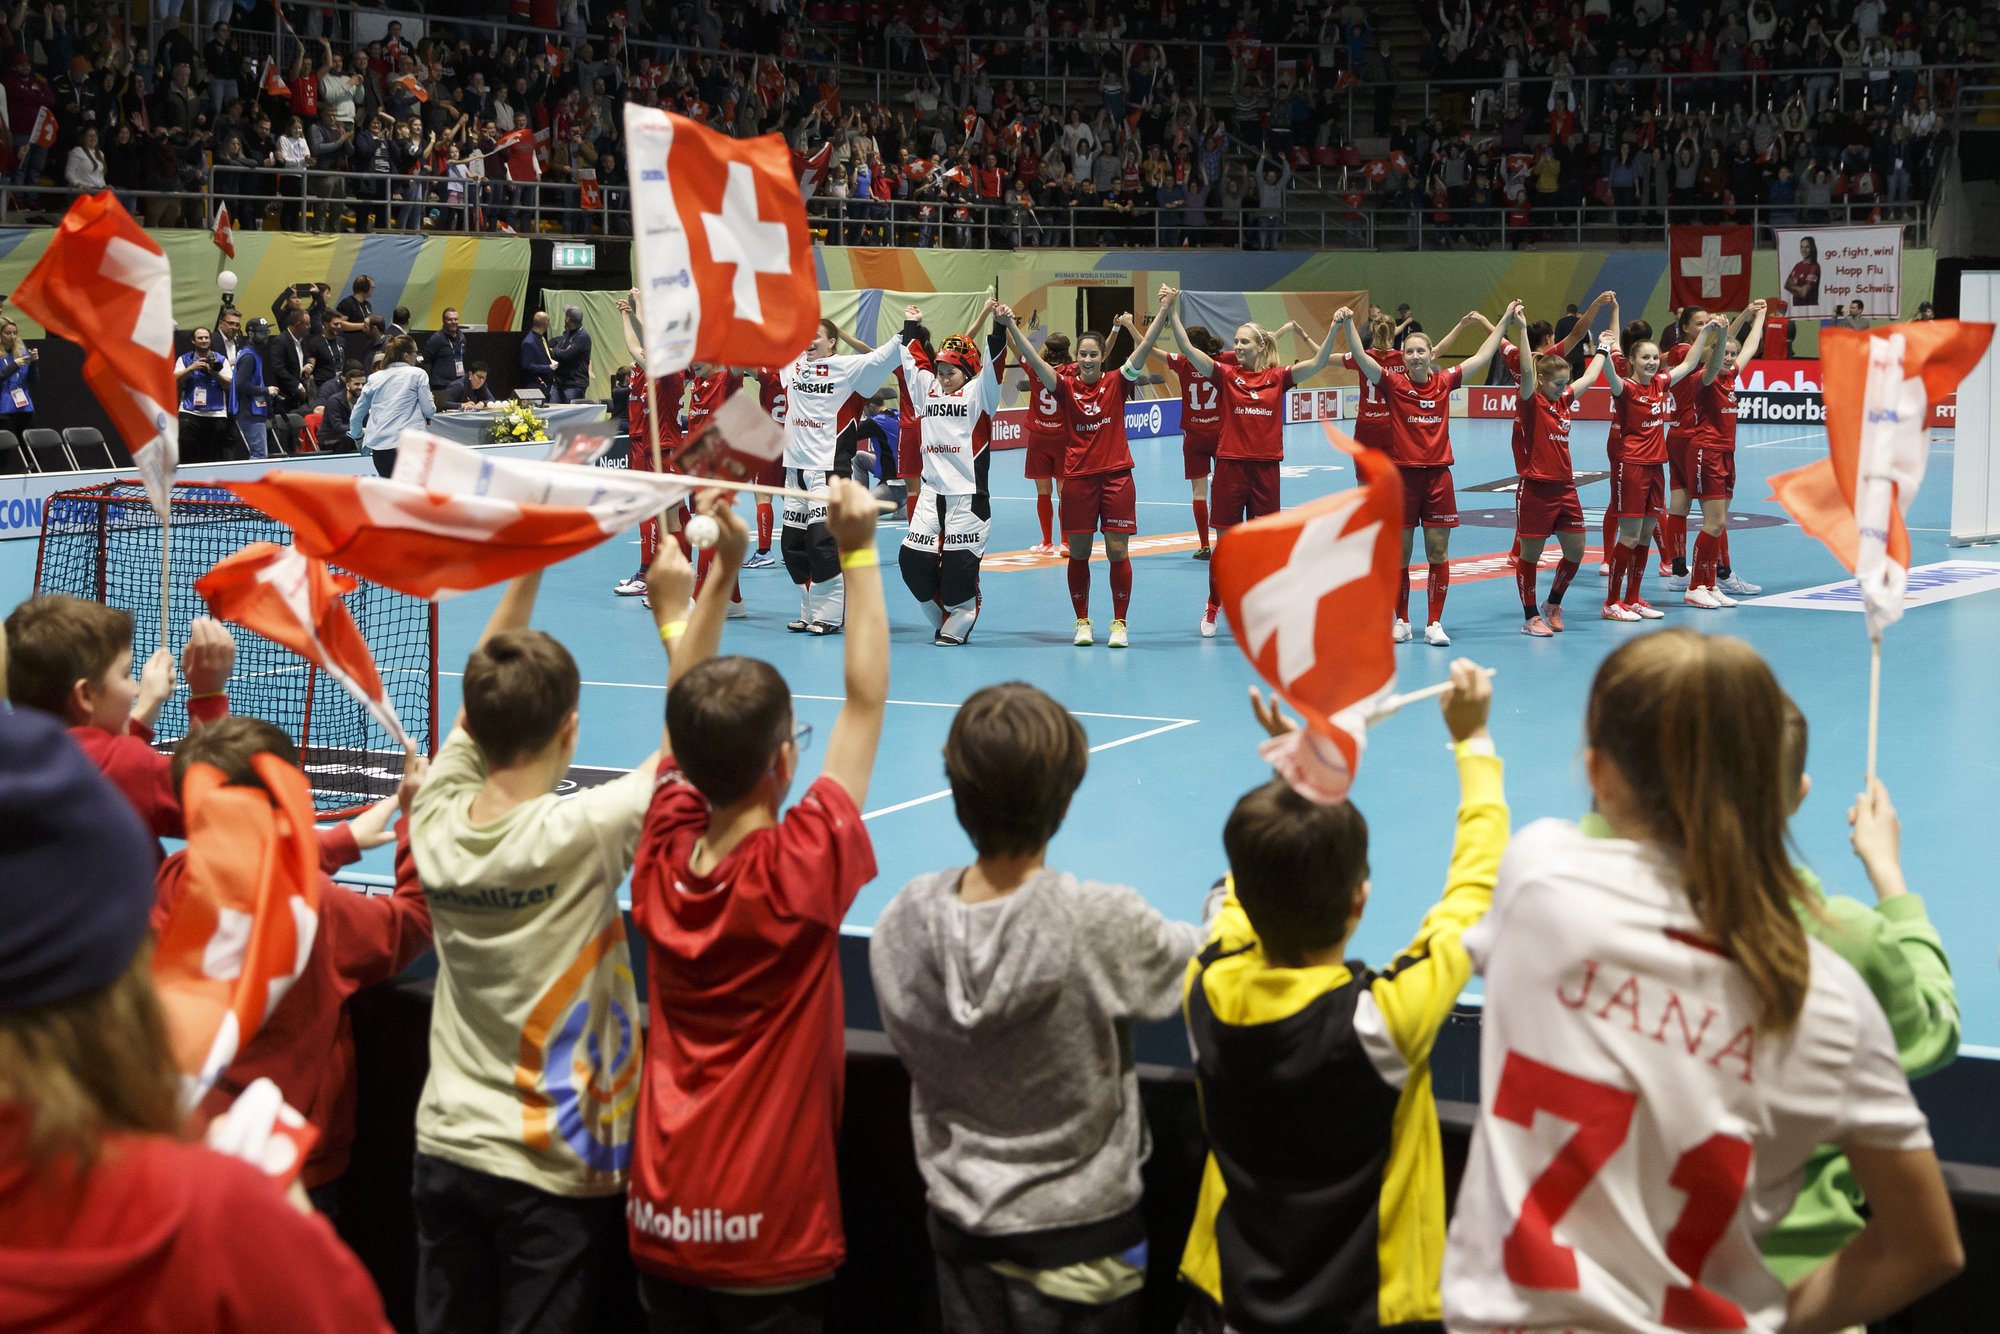 Après les exploits de l’équipe féminine suisse de unihockey la semaine dernière à Neuchâtel, le nombre de pratiquants de ce sport dans le canton pourrait augmenter à condition qu’ils aient des salles où s’entraîner.